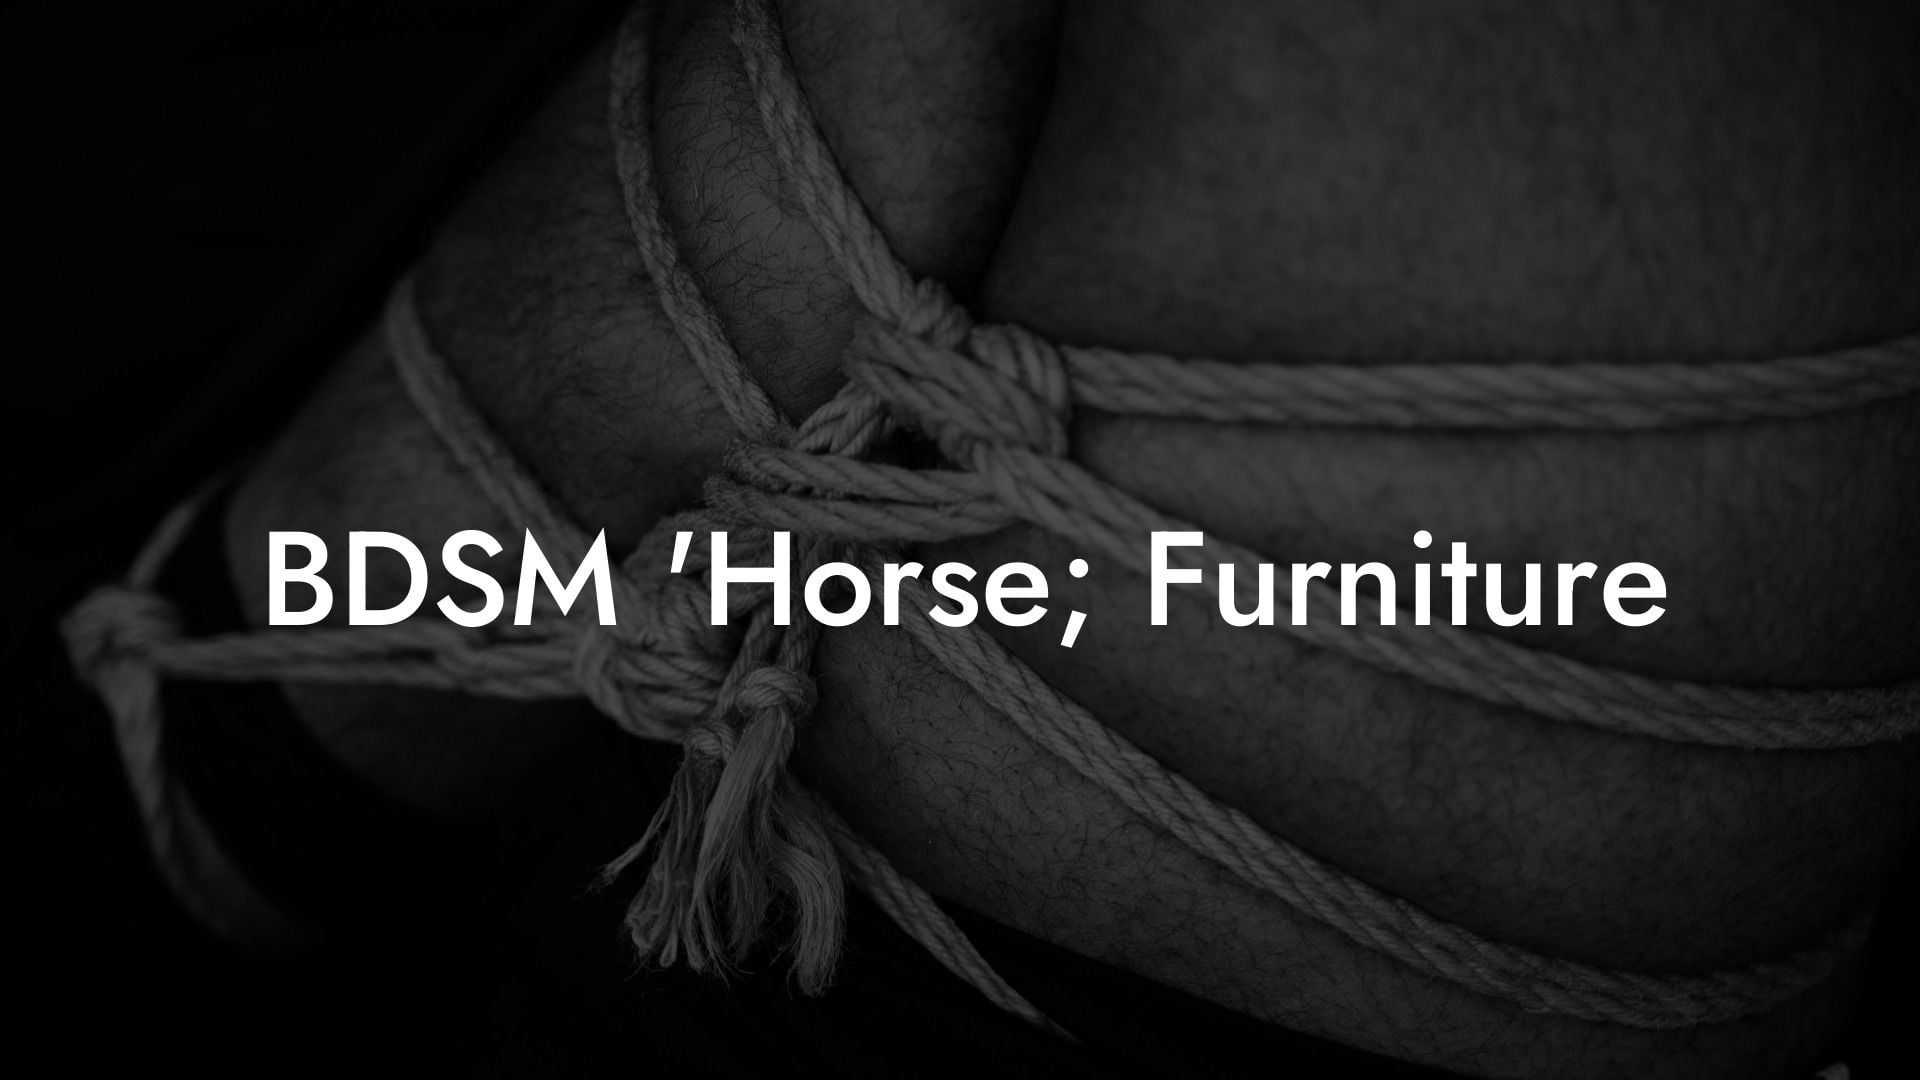 BDSM 'Horse' Furniture